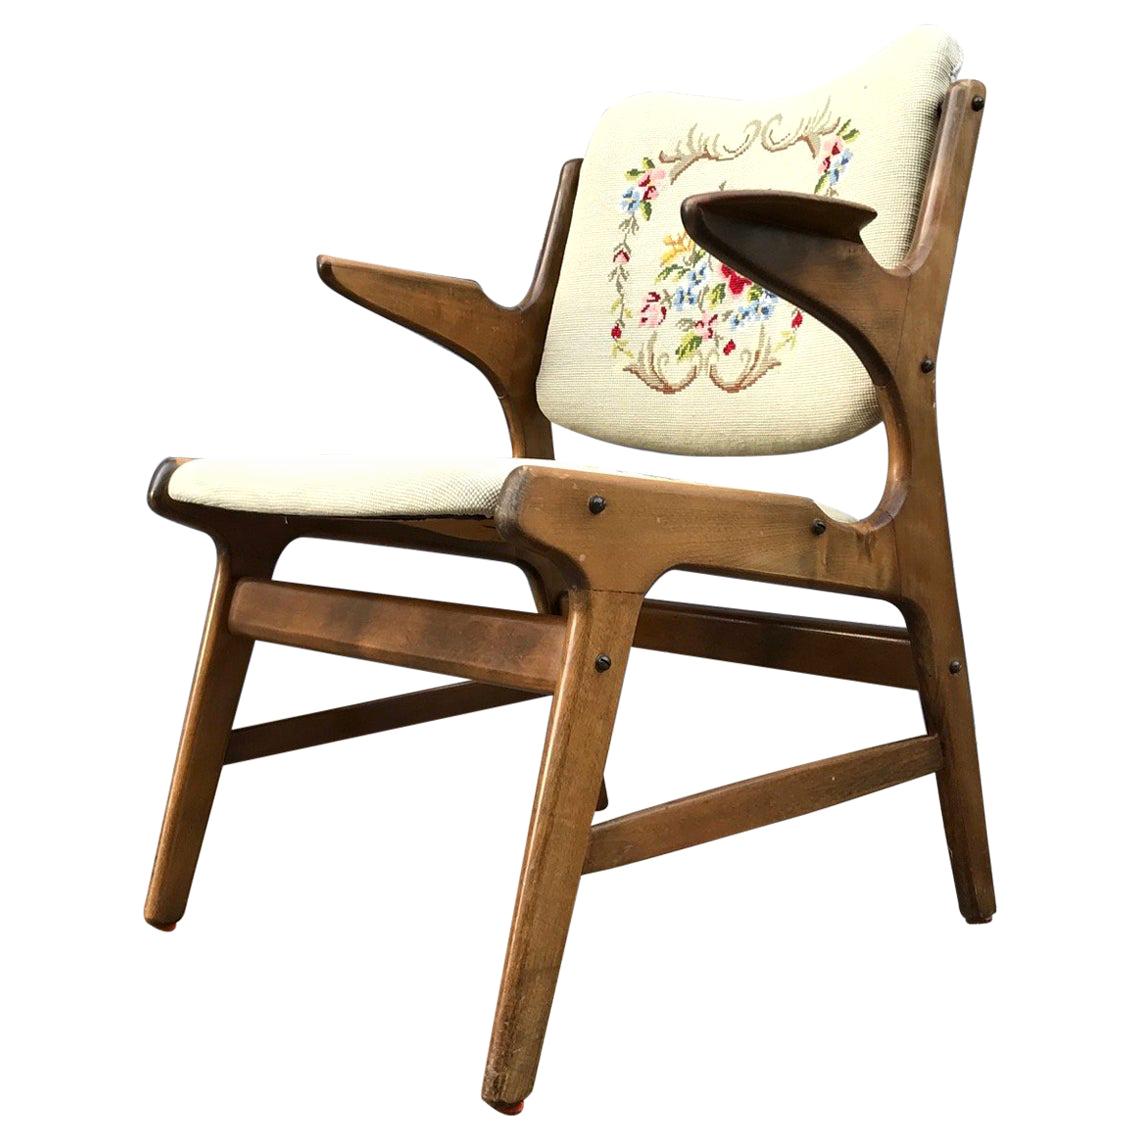 Rare Danish Oak Side Chair by A. Hovmand Olsen for A.R. Klingeberg & Søn, 1950s For Sale